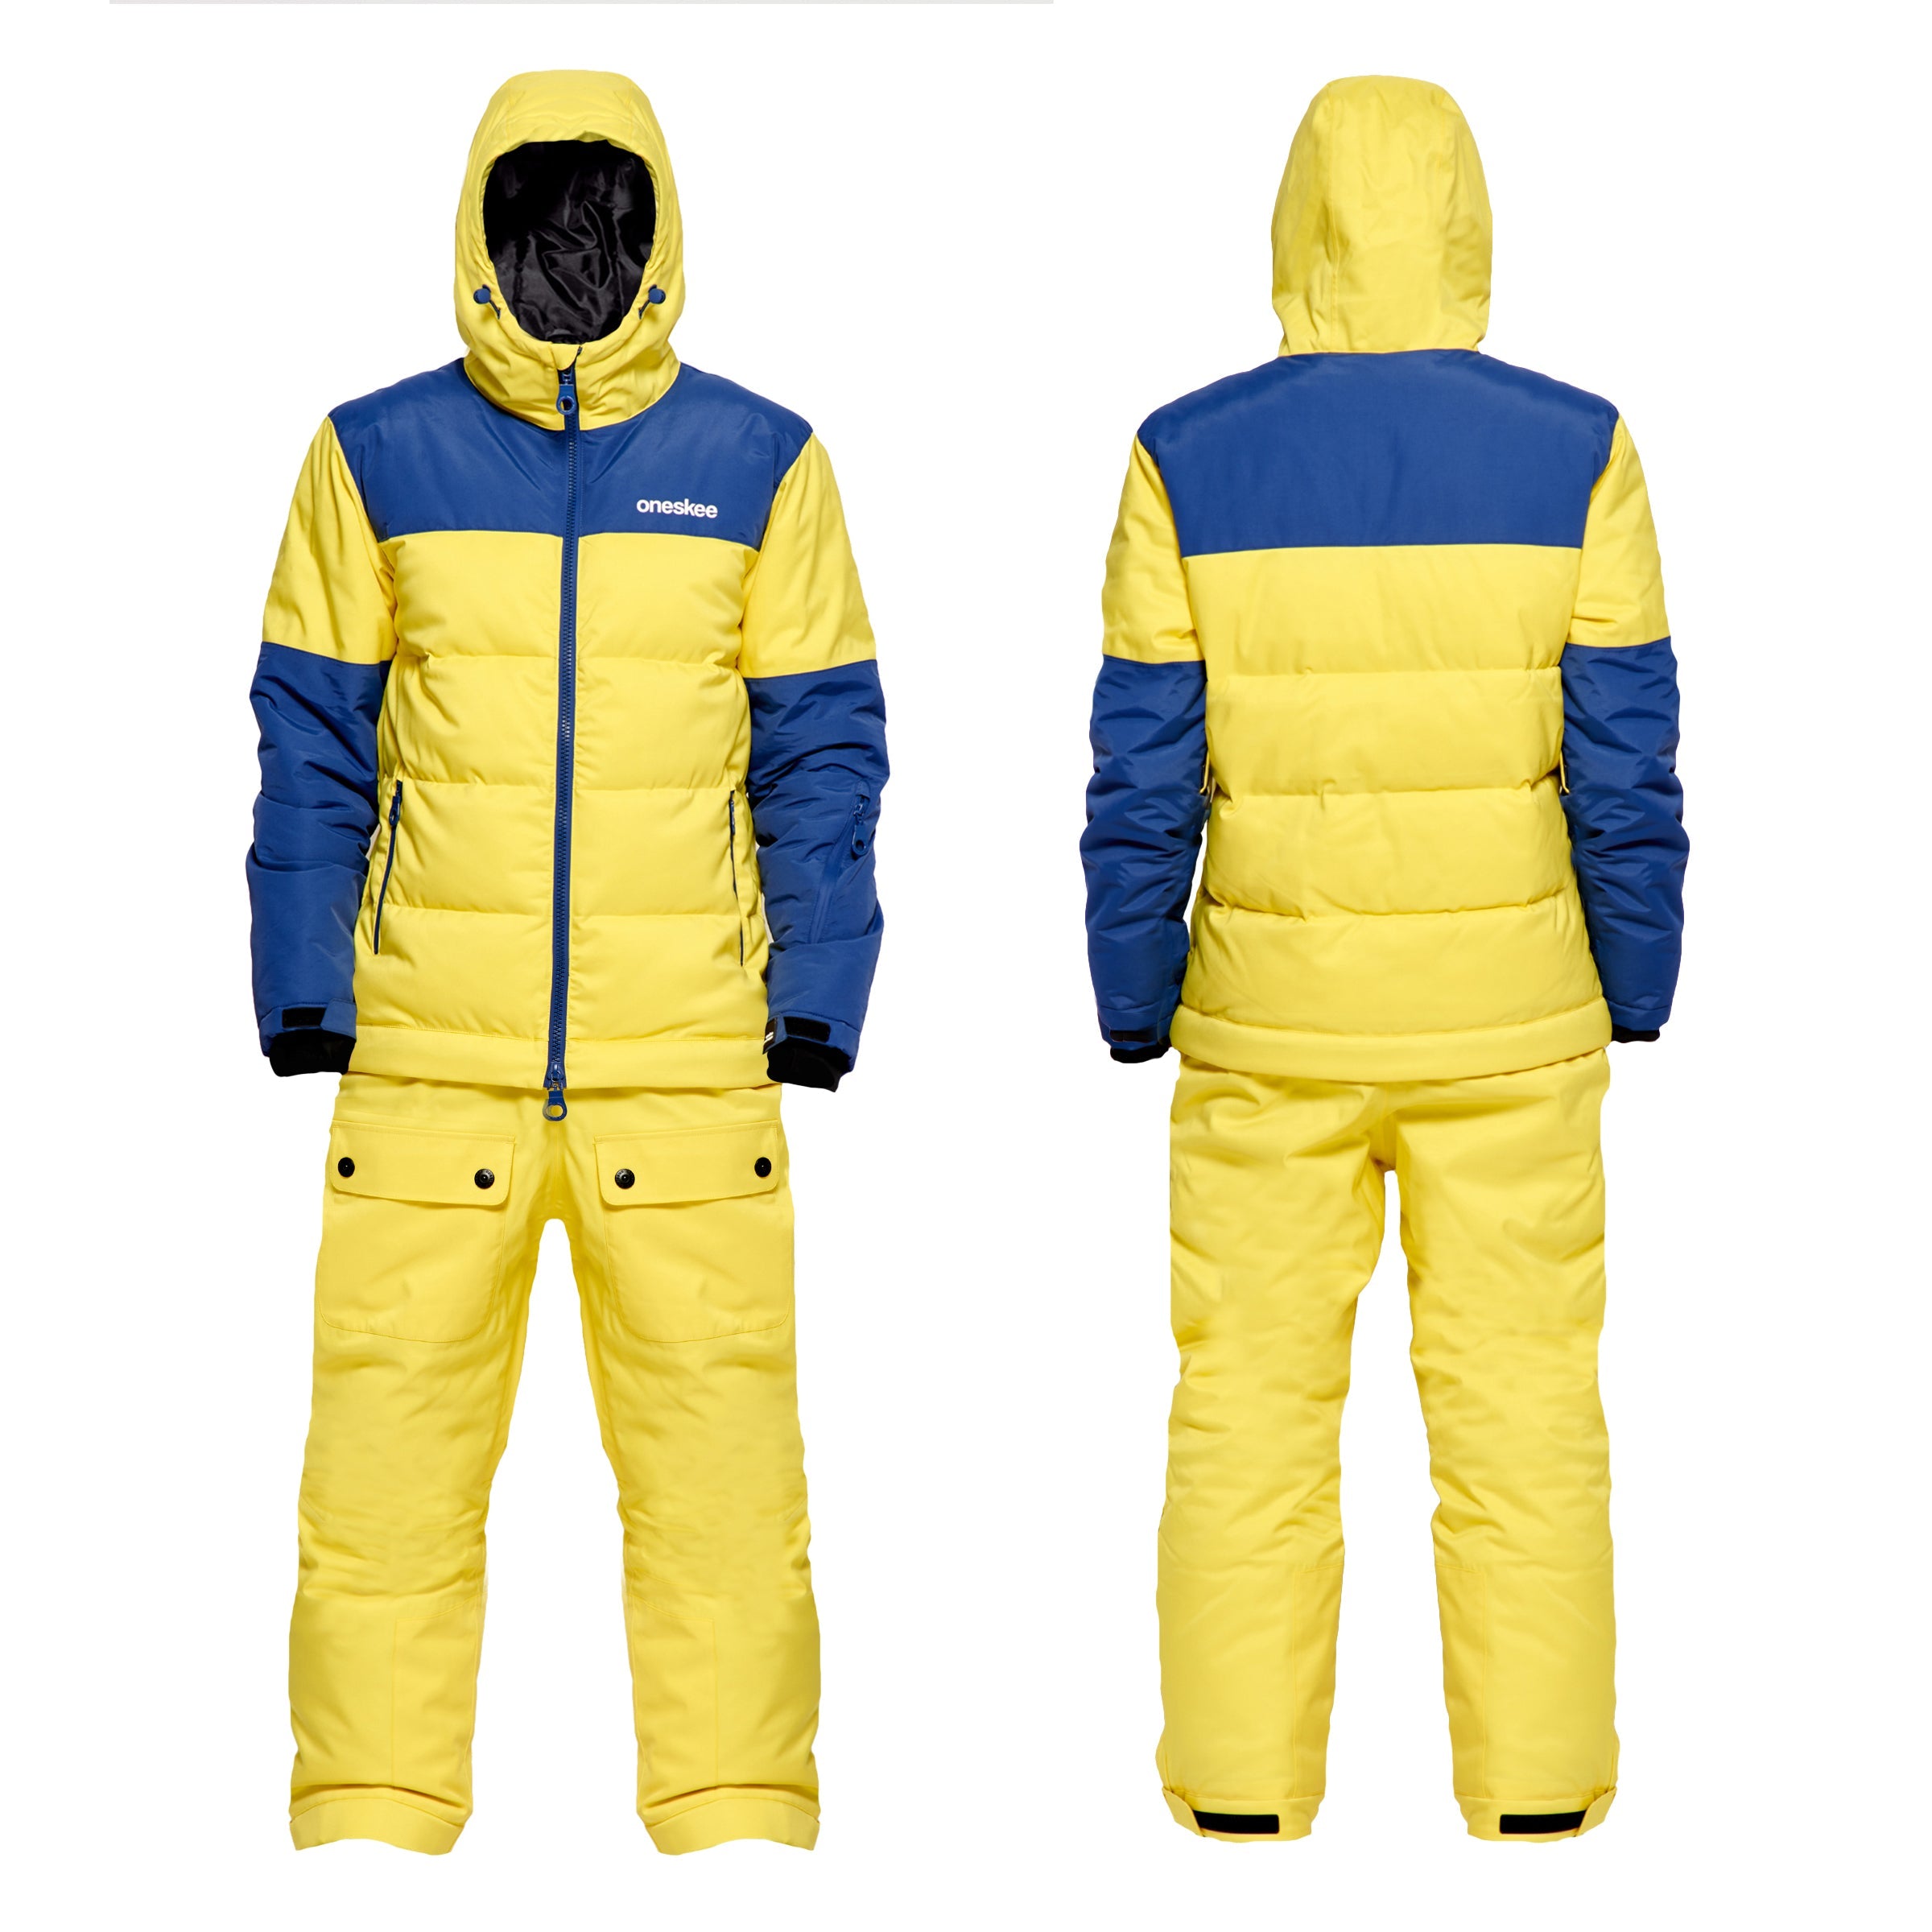 Men's 2-in-1 Snow Suit, Yellow